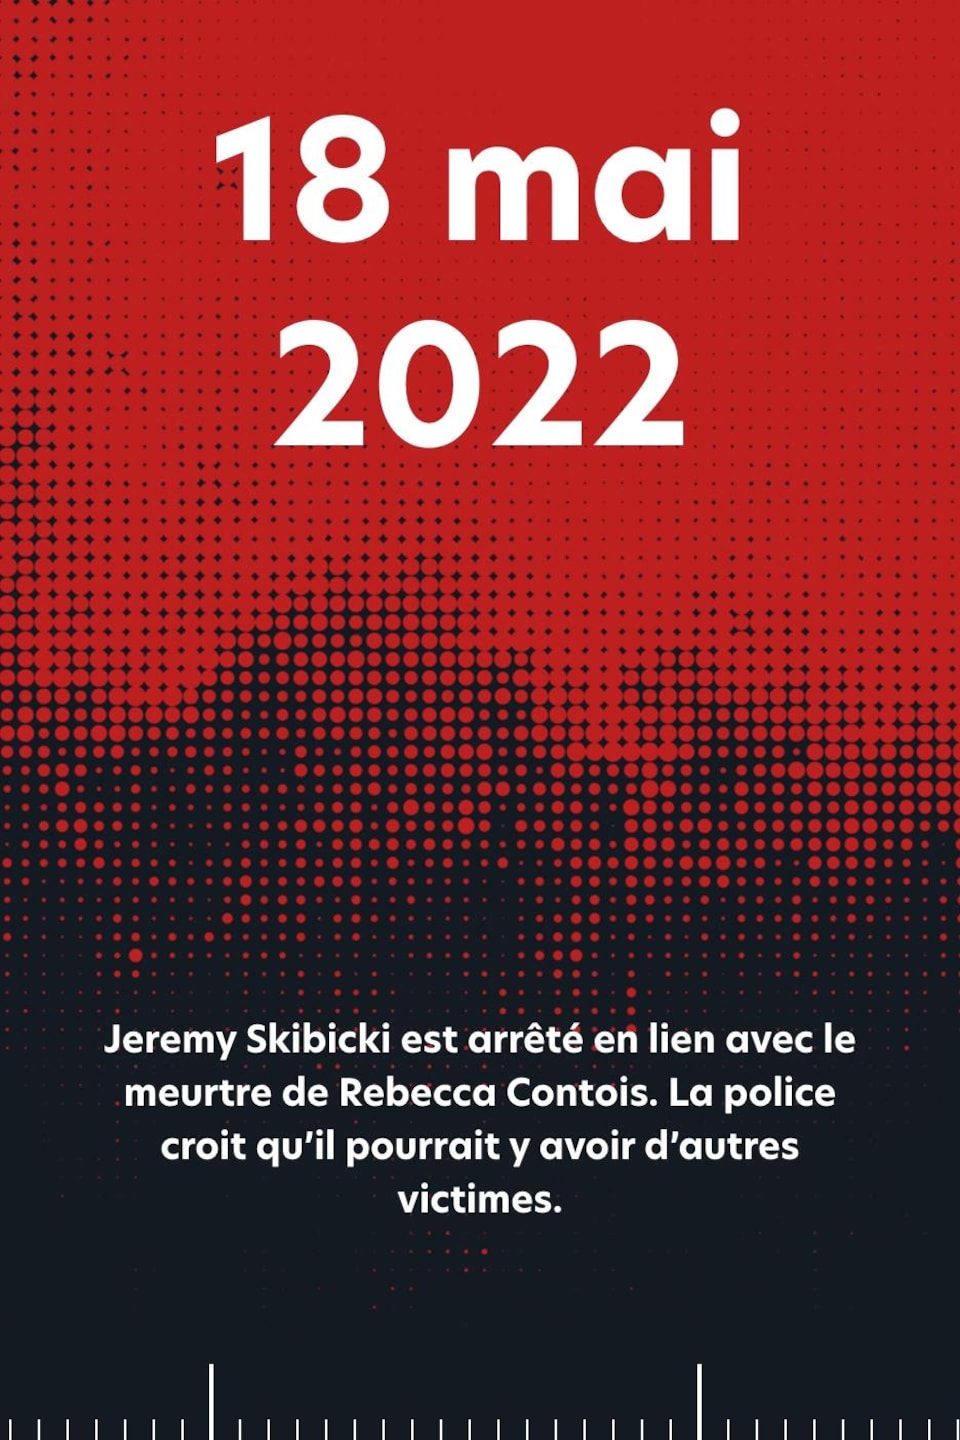 18 mai 2022 : Jeremy Skibicki est arrêté en lien avec le meurtre de Rebecca Contois. La police croit qu’il pourrait y avoir d’autres victimes.